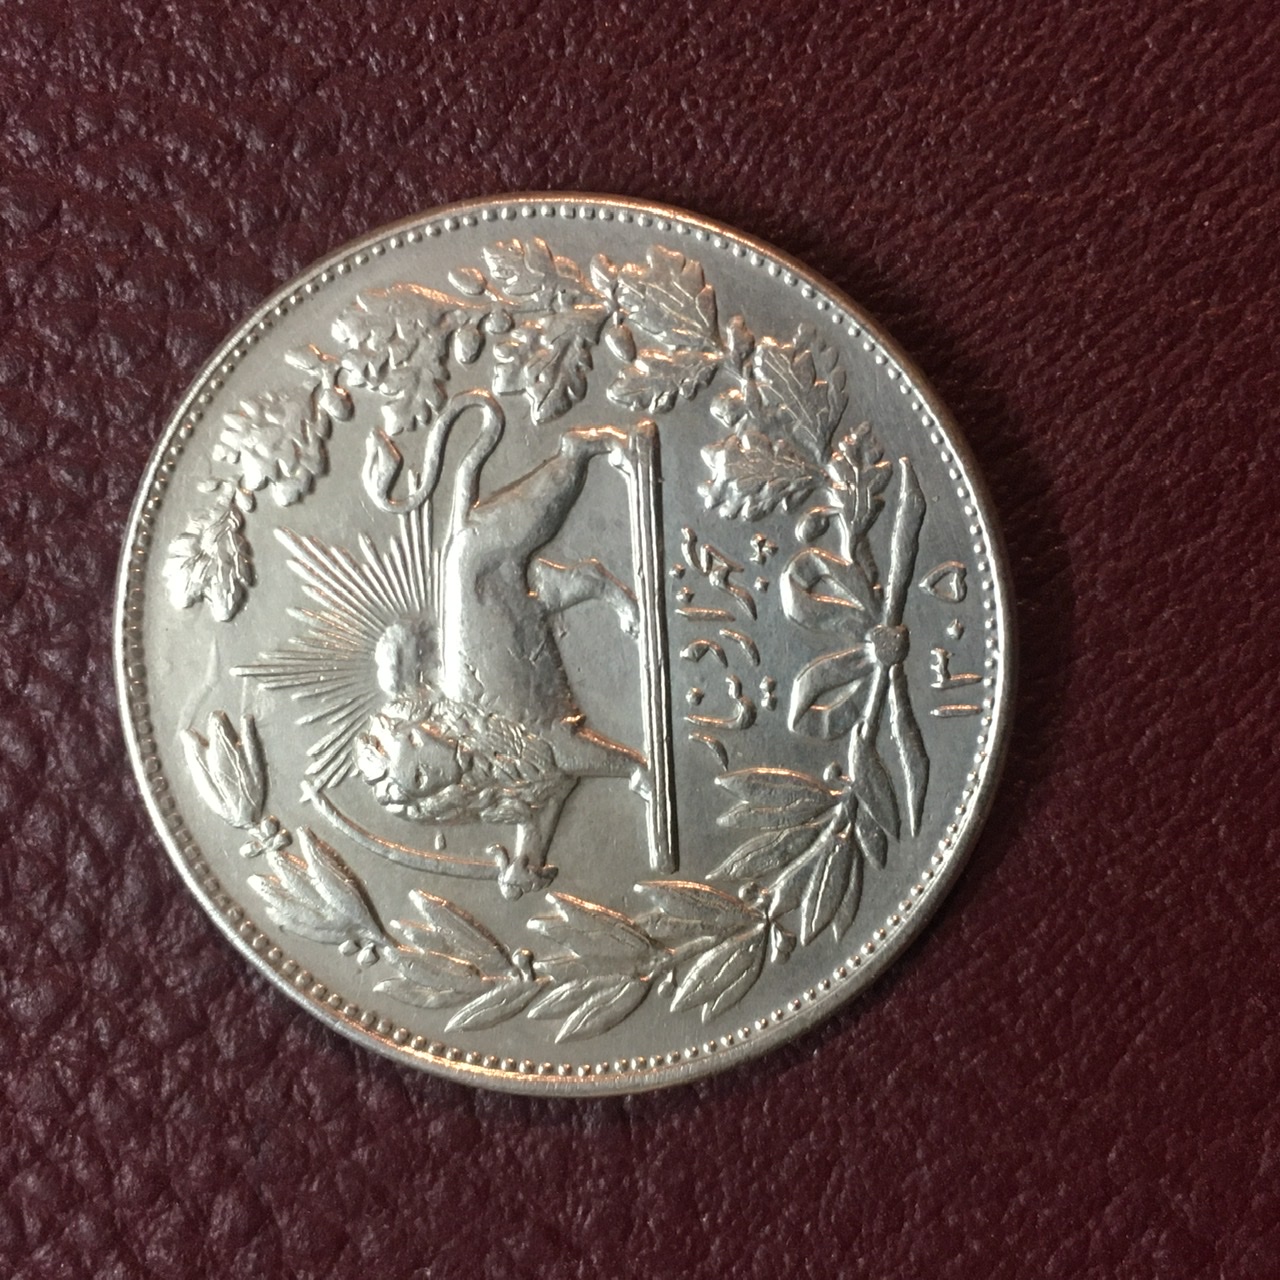 سکه نقره ۵٠٠٠ دیناری خطی یا عنوان ١٣٠۵ رضا شاه در حد بانکی و عالی کمیاب و ارزشمند